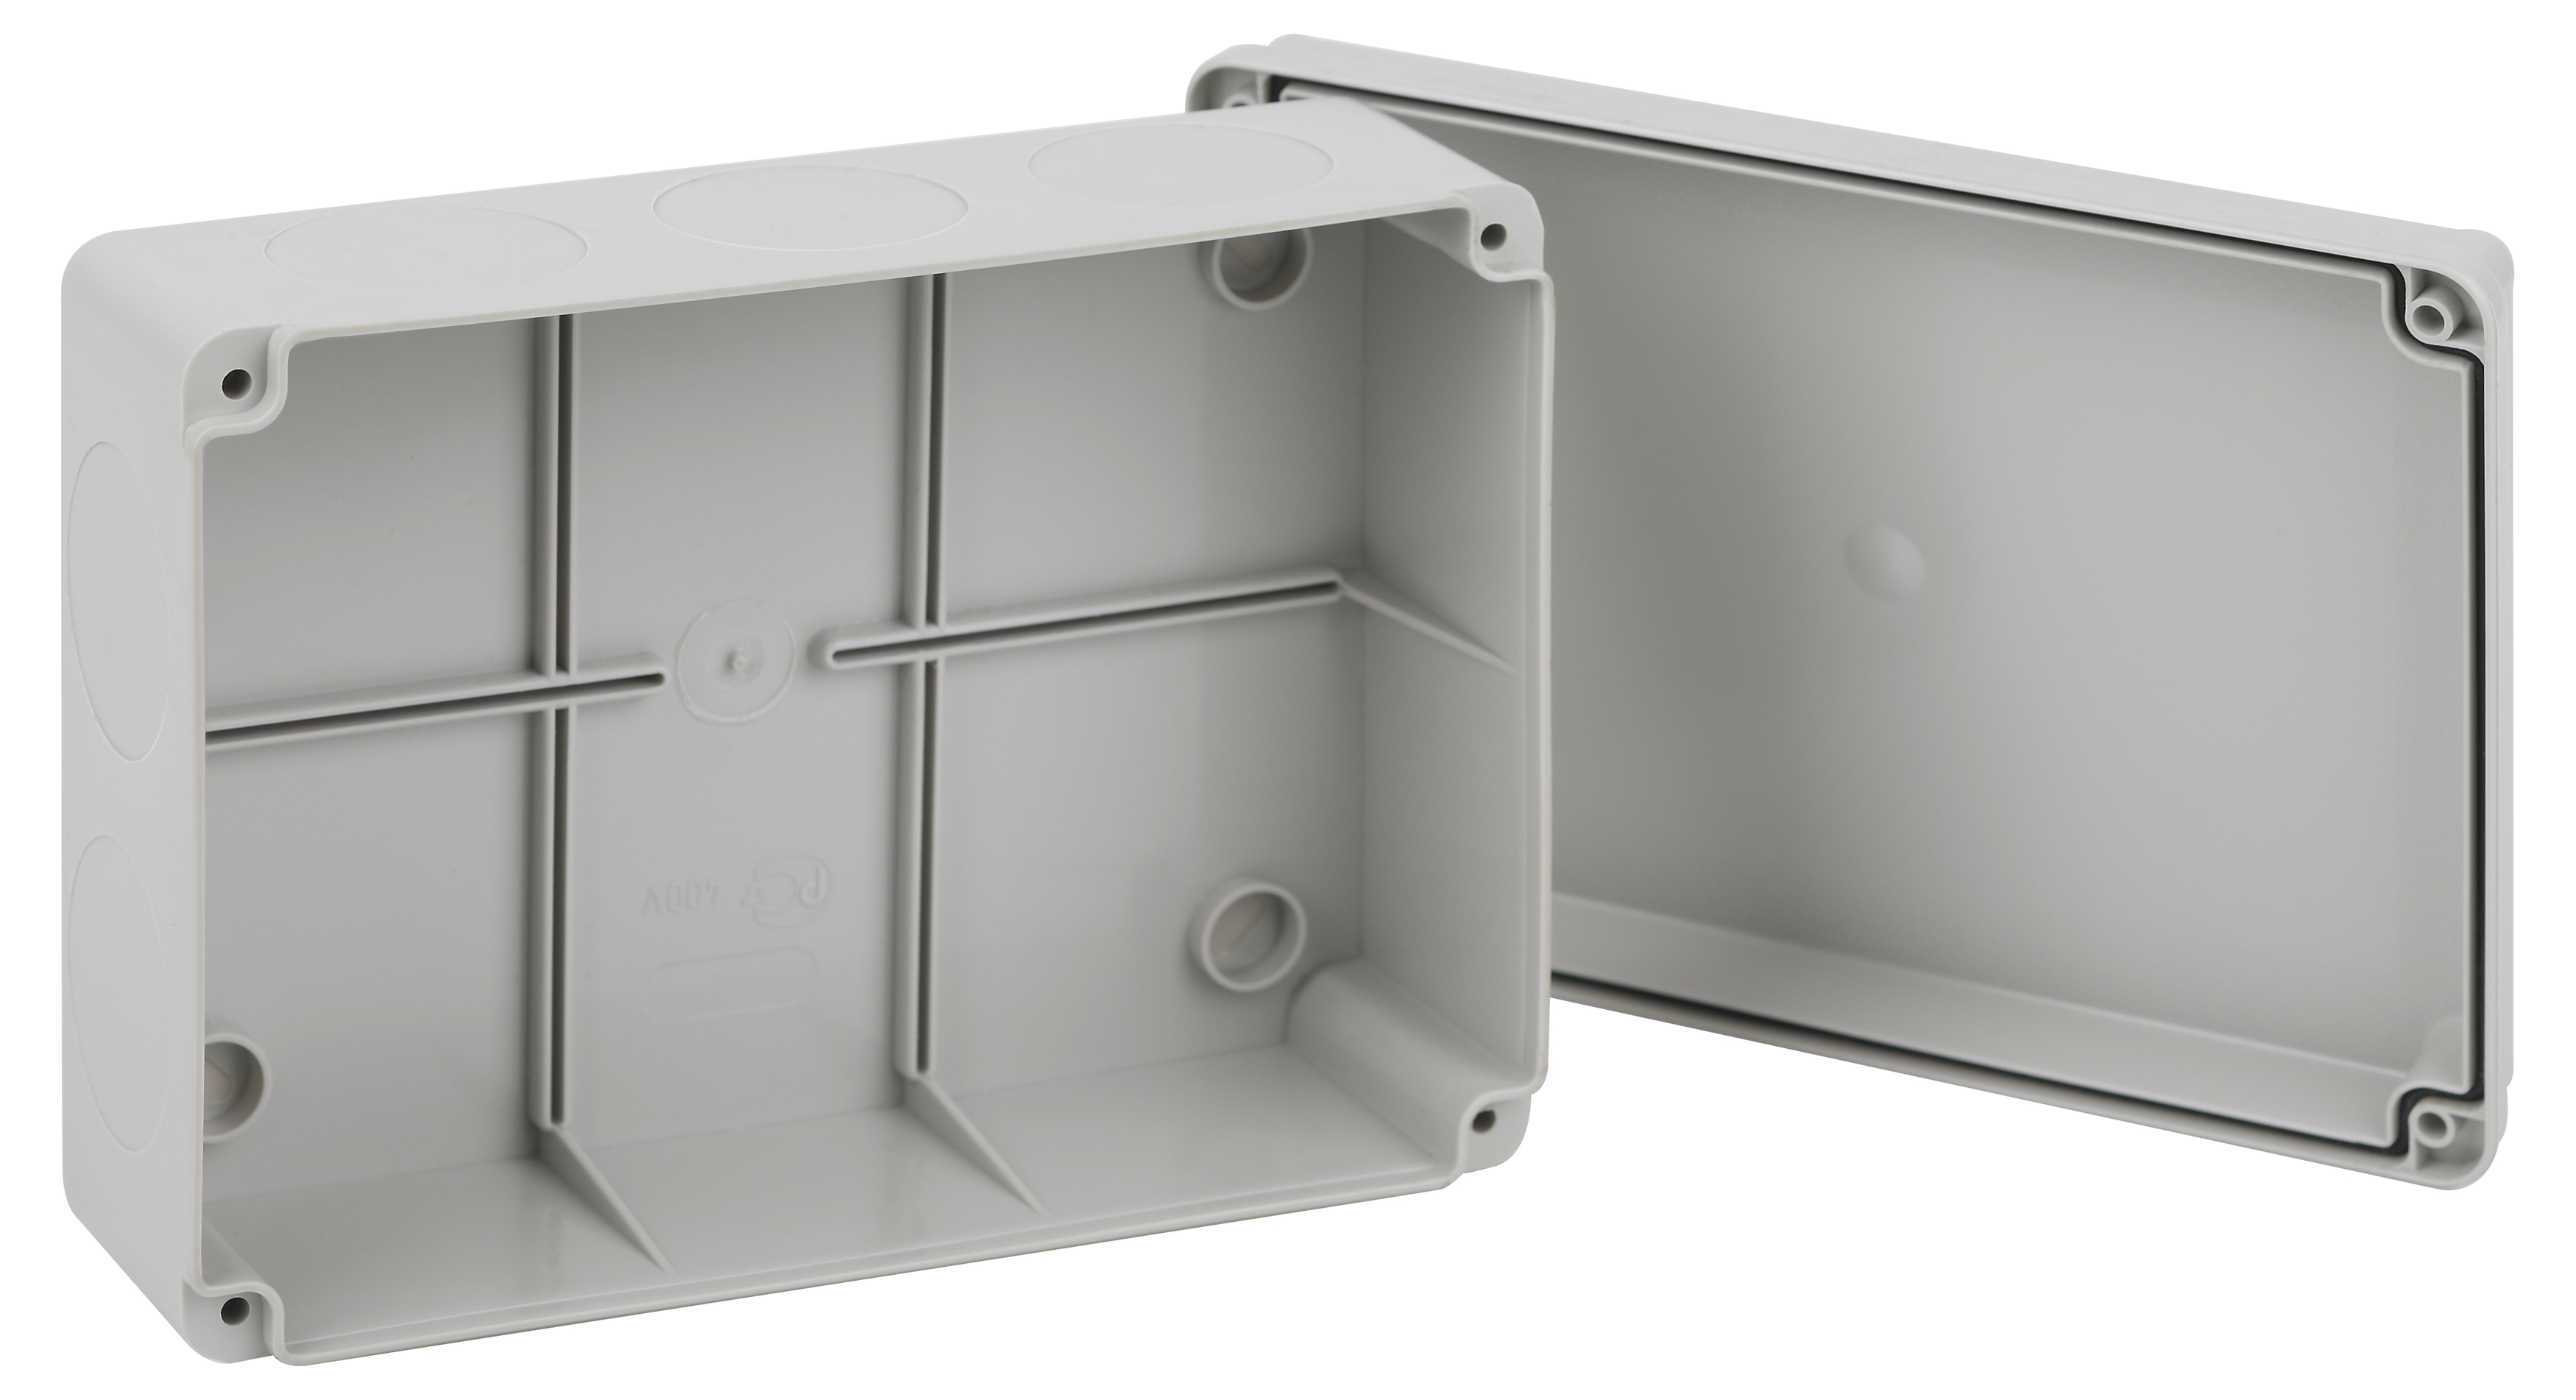 Распаячная коробка ЭРА KORvp приборная подъездная открытой установки 190х140х75мм на винтах с гладкими стенками IP55